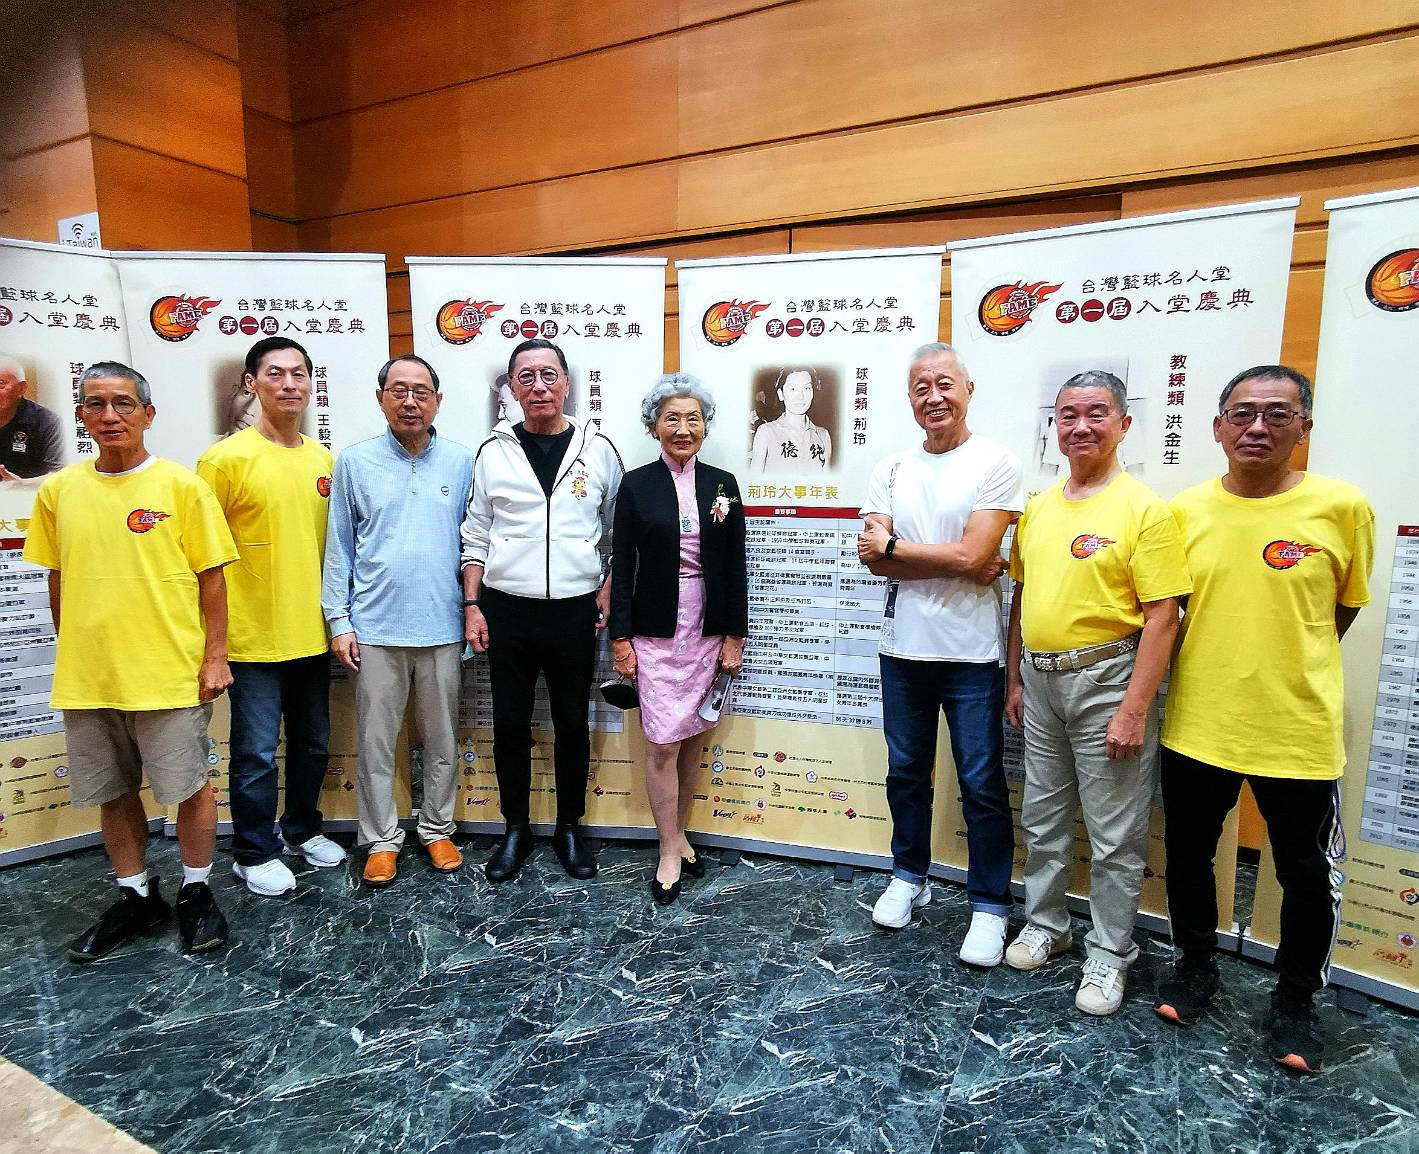 首屆台灣籃球名人堂慶典名將齊聚。大會提供